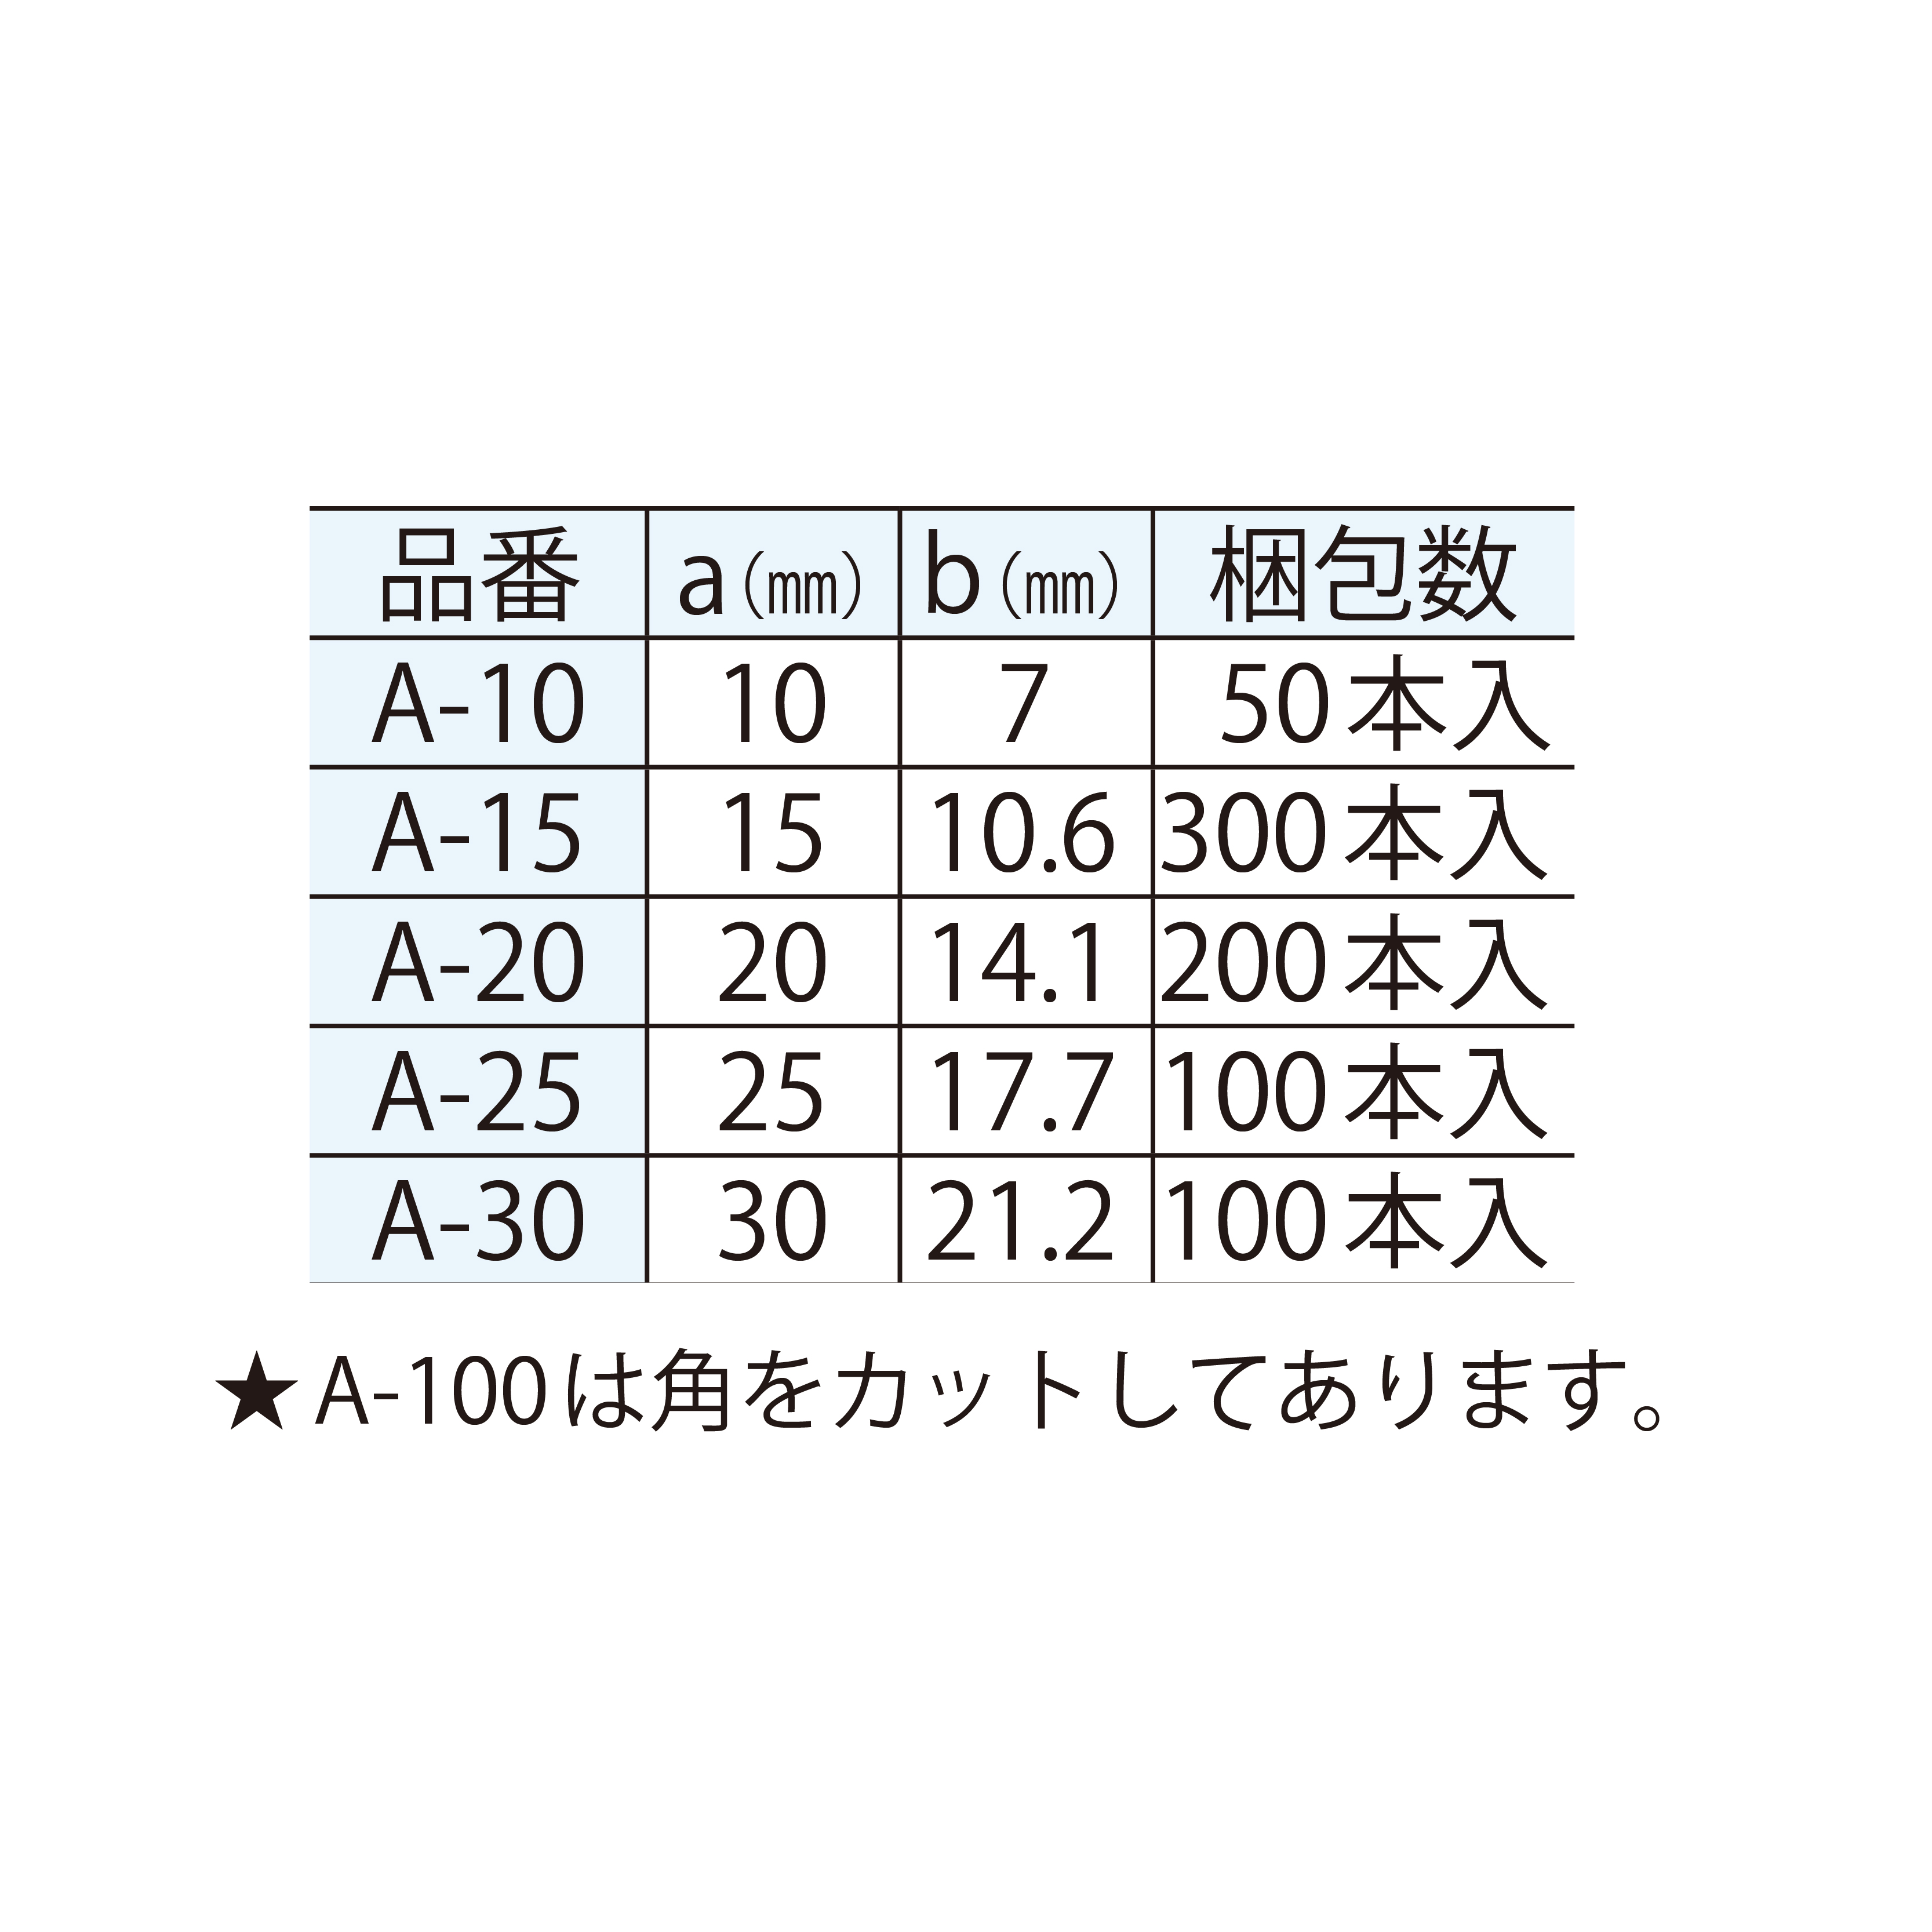 発泡面木 三角型 A-25 25×17.7(mm) 面取り 【ケース販売】100本入 東洋産業